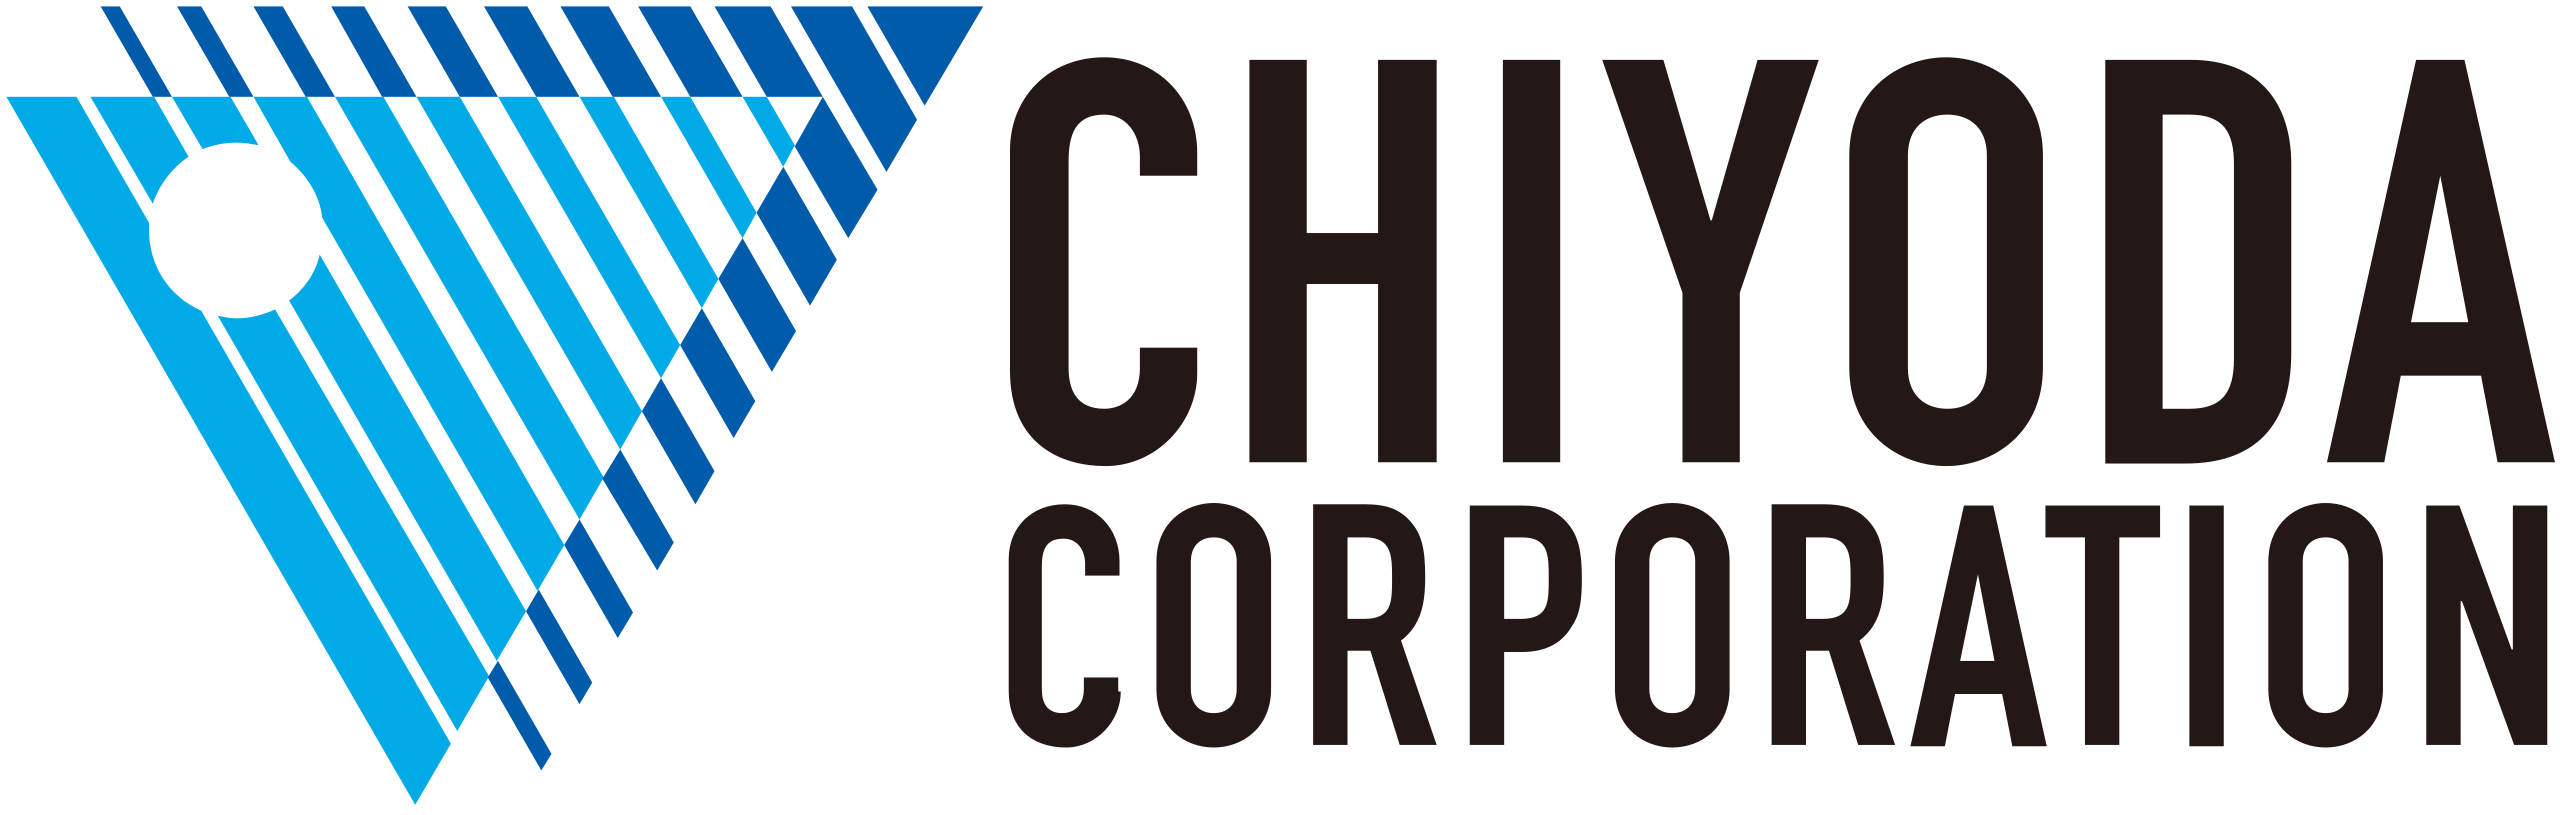 Chiyoda_Corporation_company_logo.svg